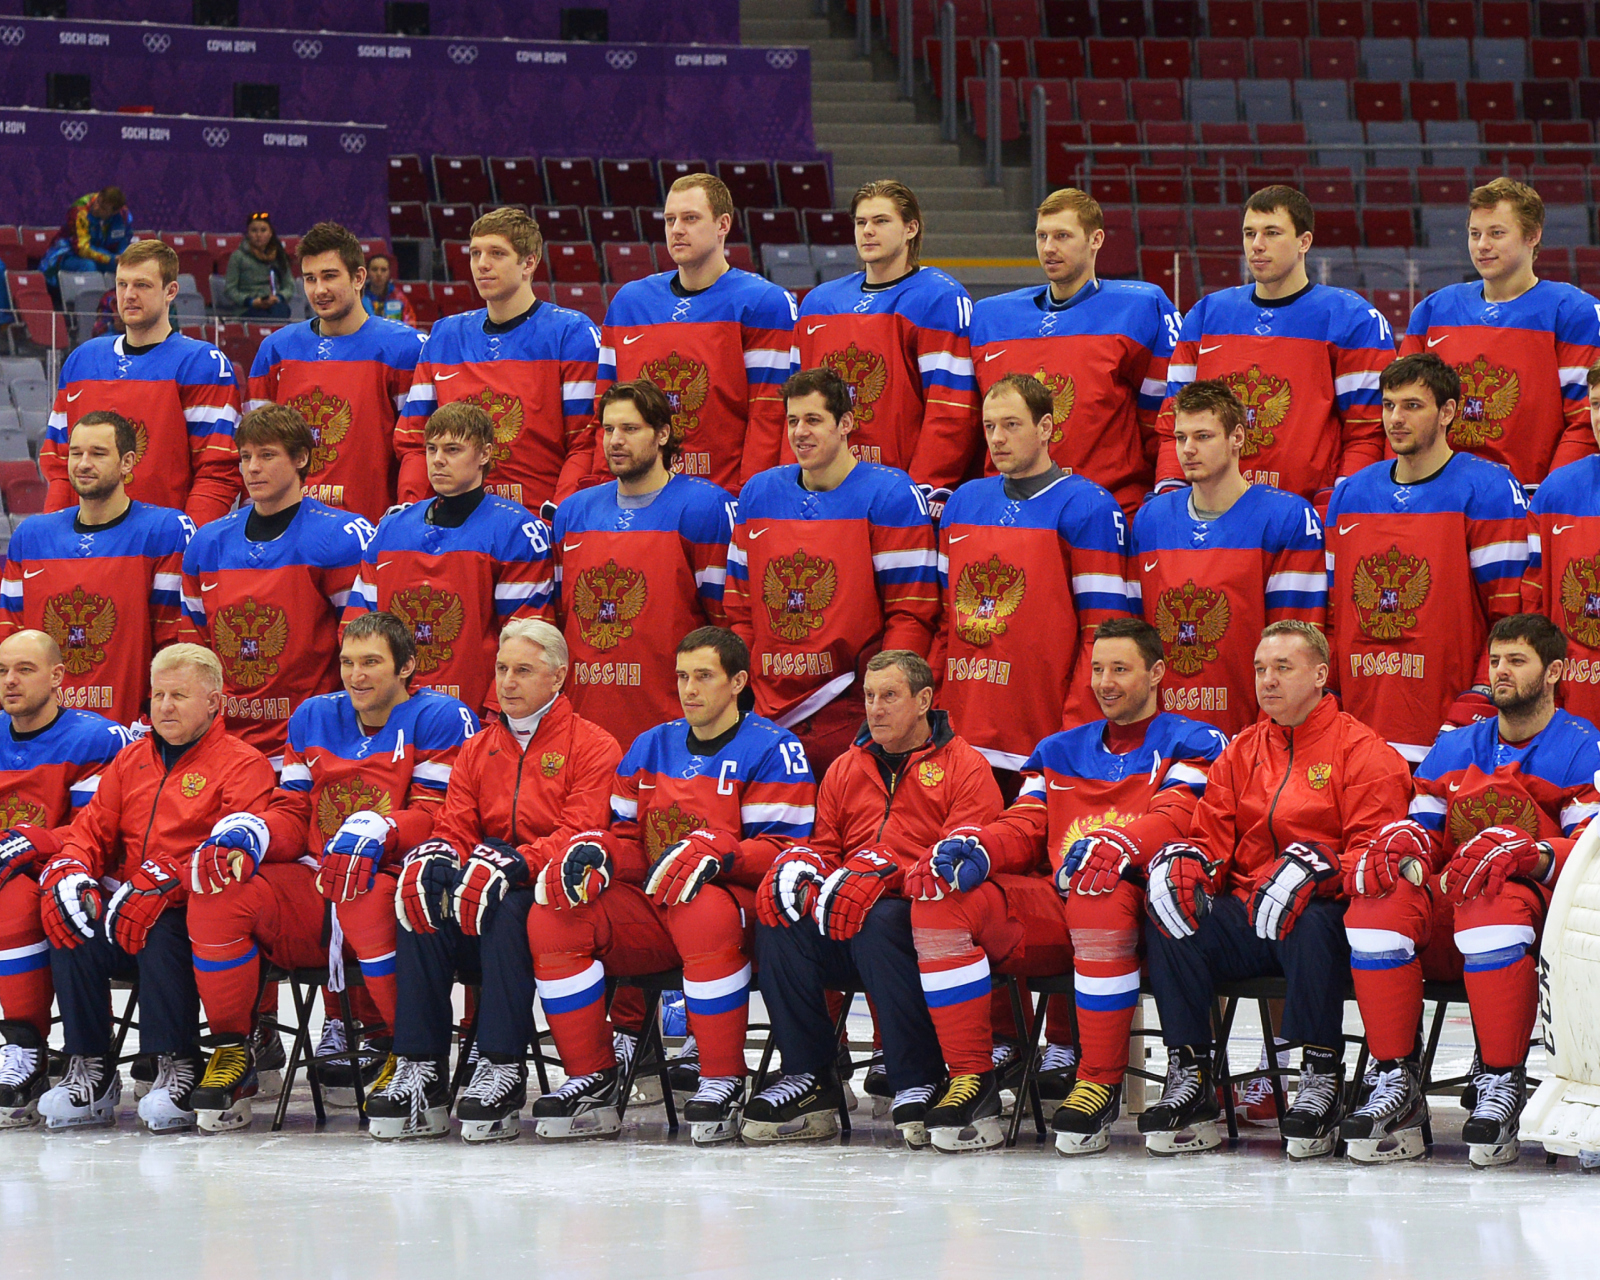 Russian Hockey Team Sochi 2014 wallpaper 1600x1280